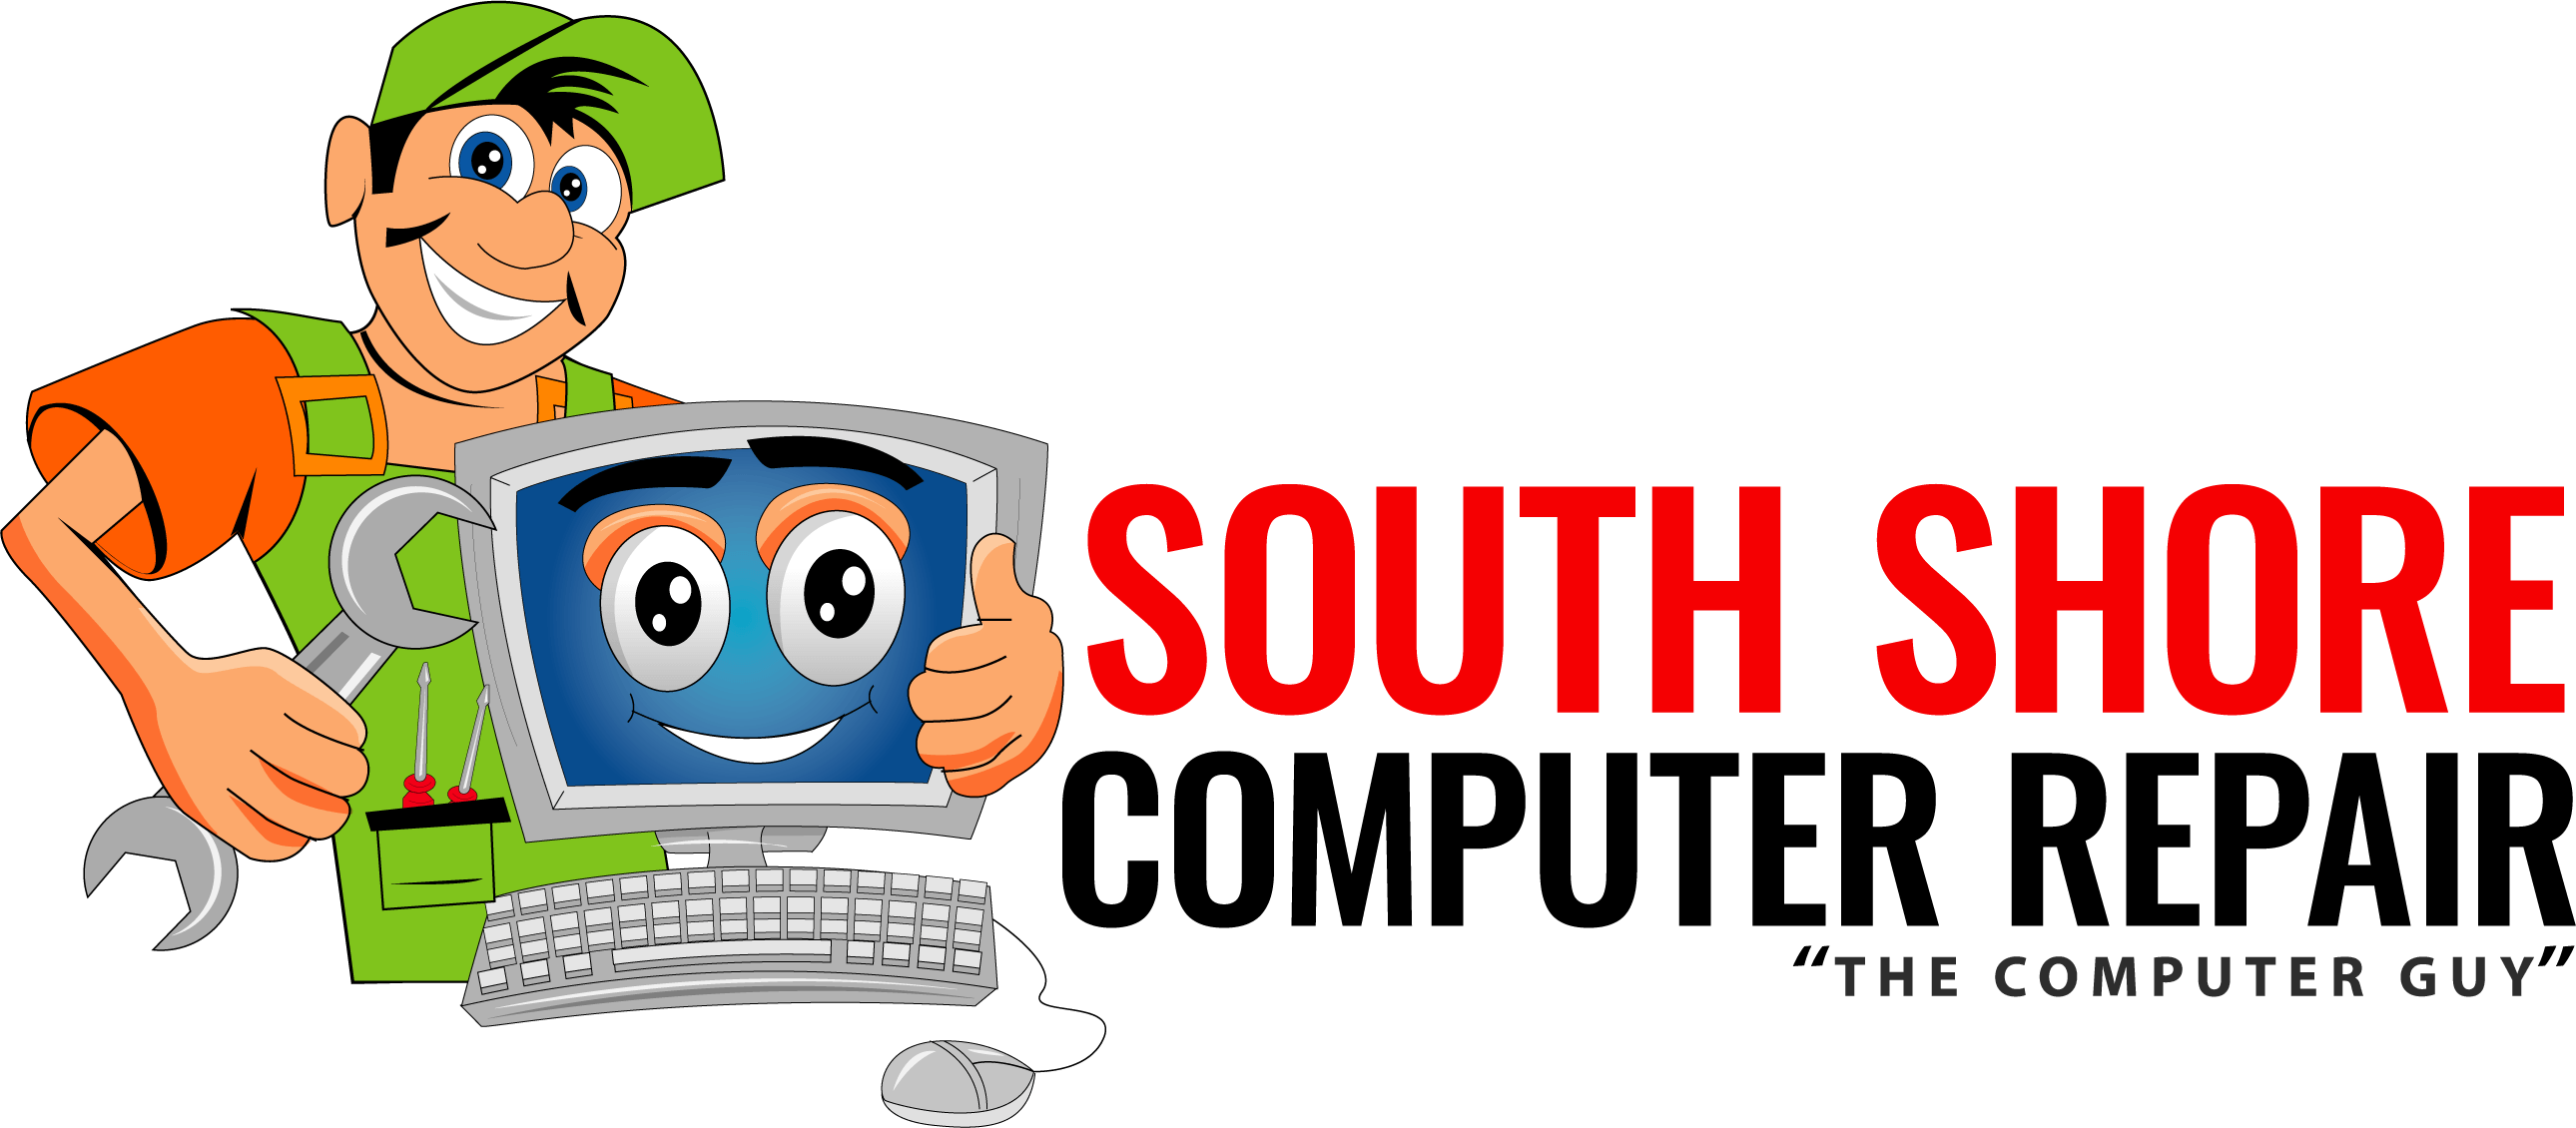 Computer Repair Logo - South Shore Computer Repair – 